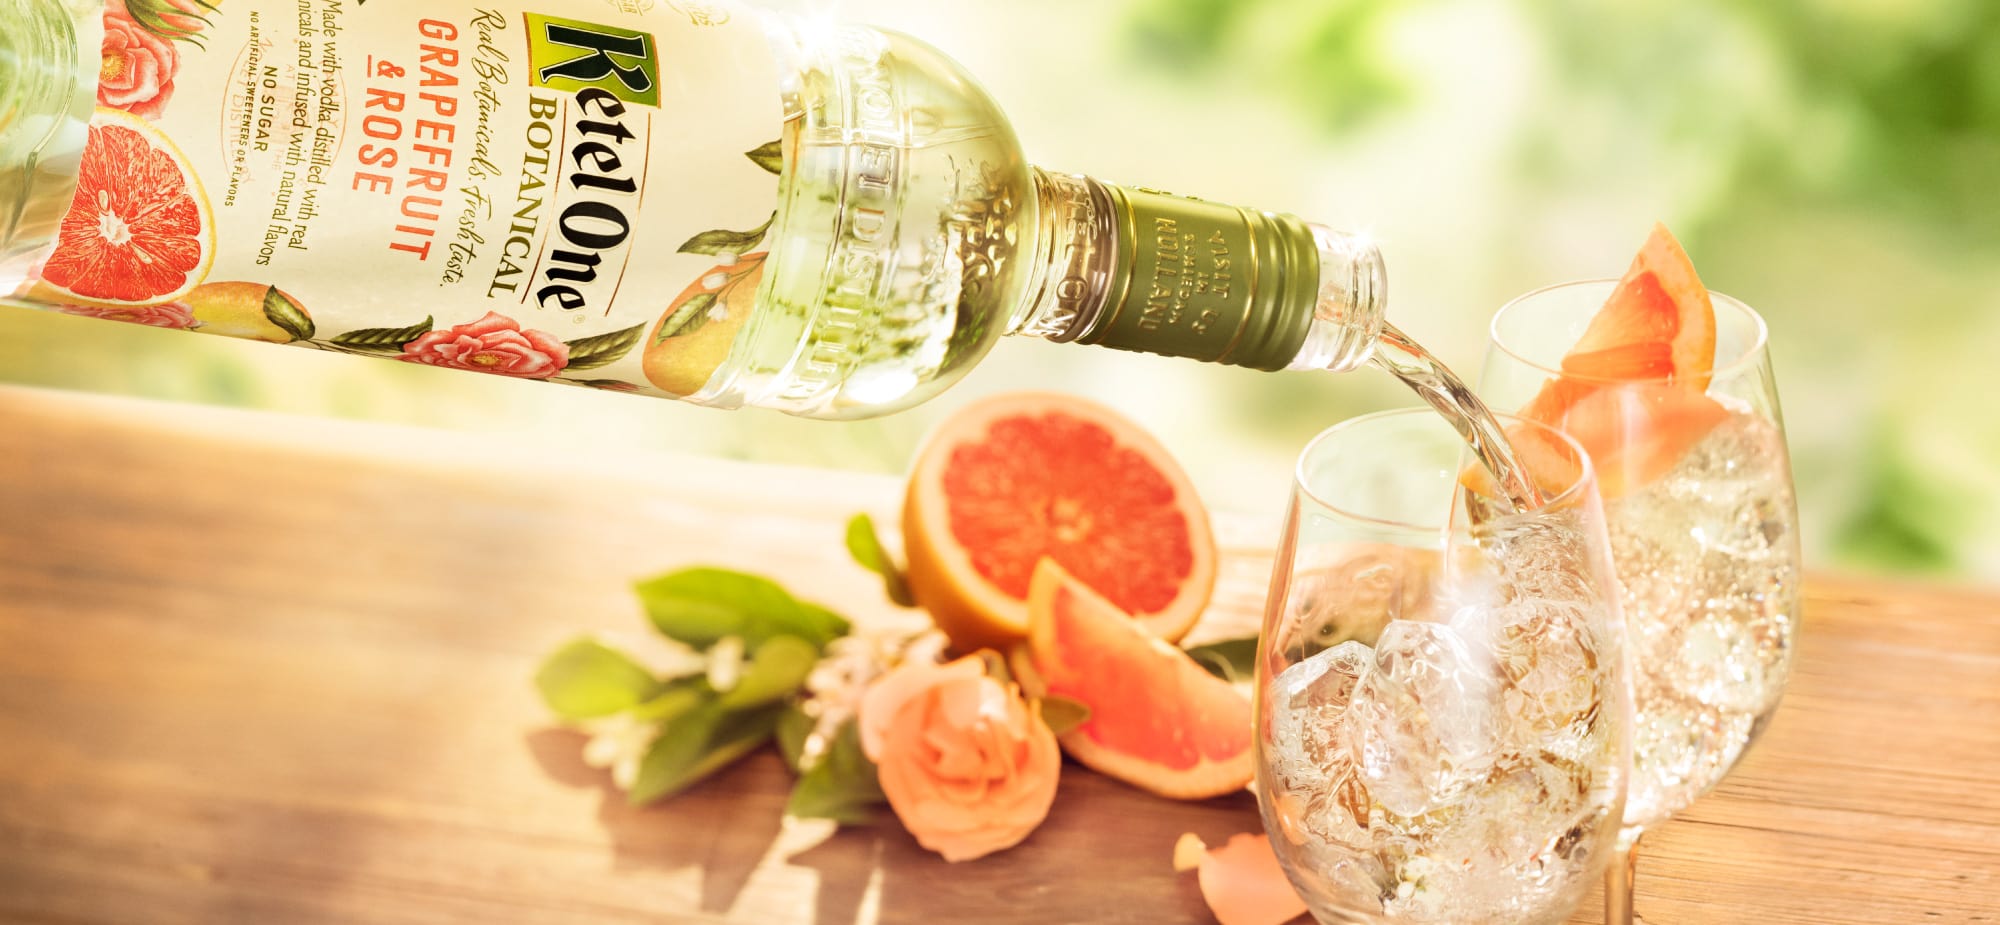 Ketel One Botanicals Create Diet "Vodka" | 4 Recipes + Nutrition Details